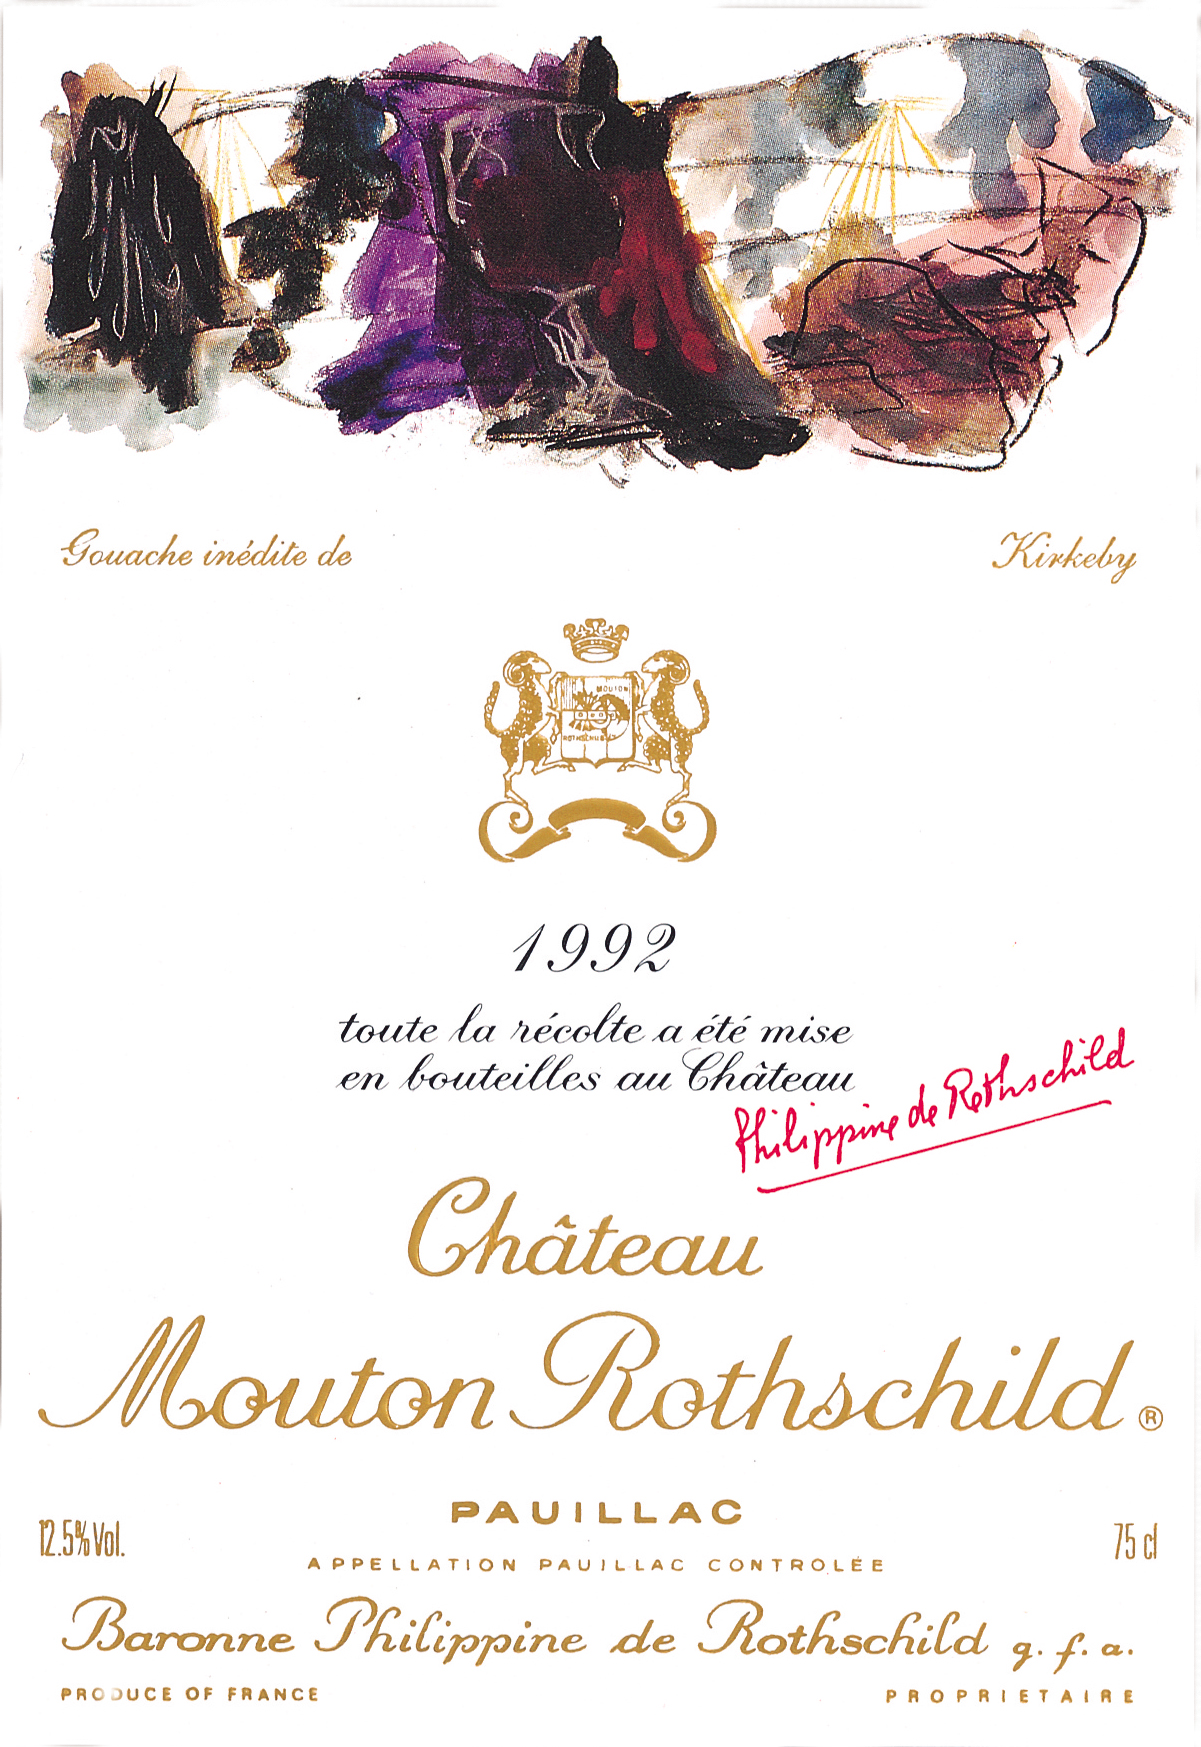 Etiquette Mouton Rothschild 1992